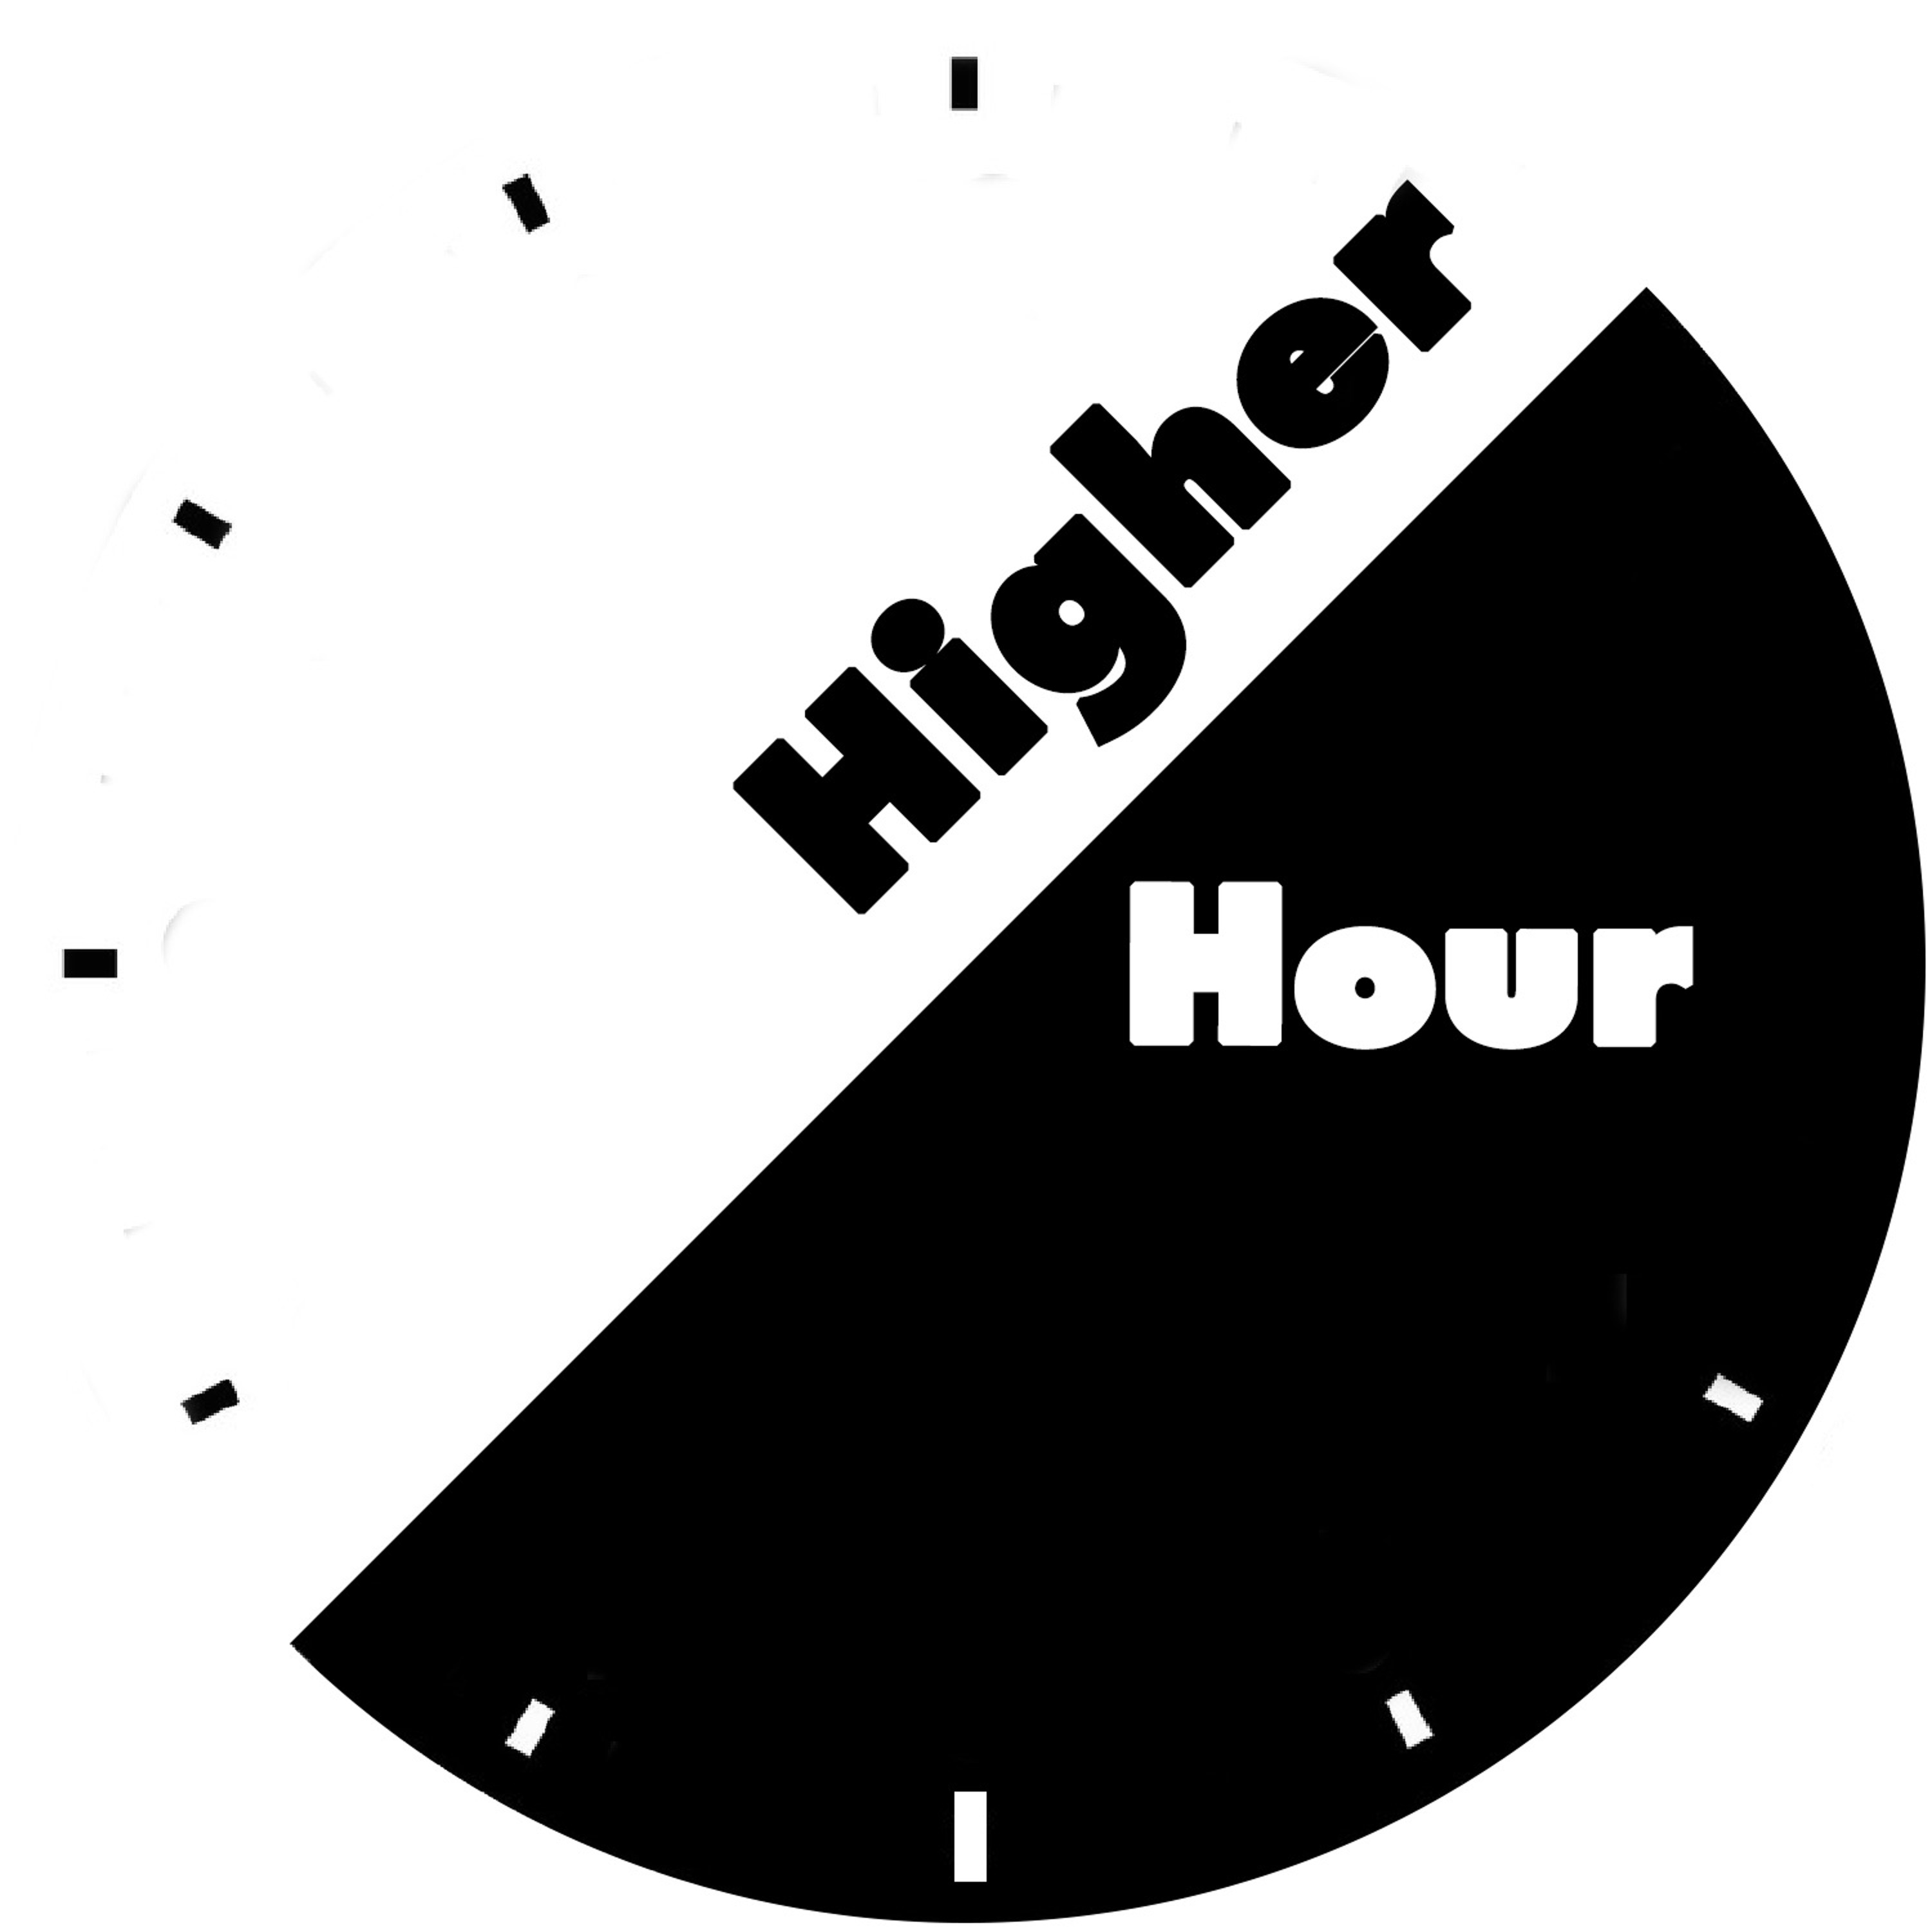 Higher Hour - Aug 10, 2019